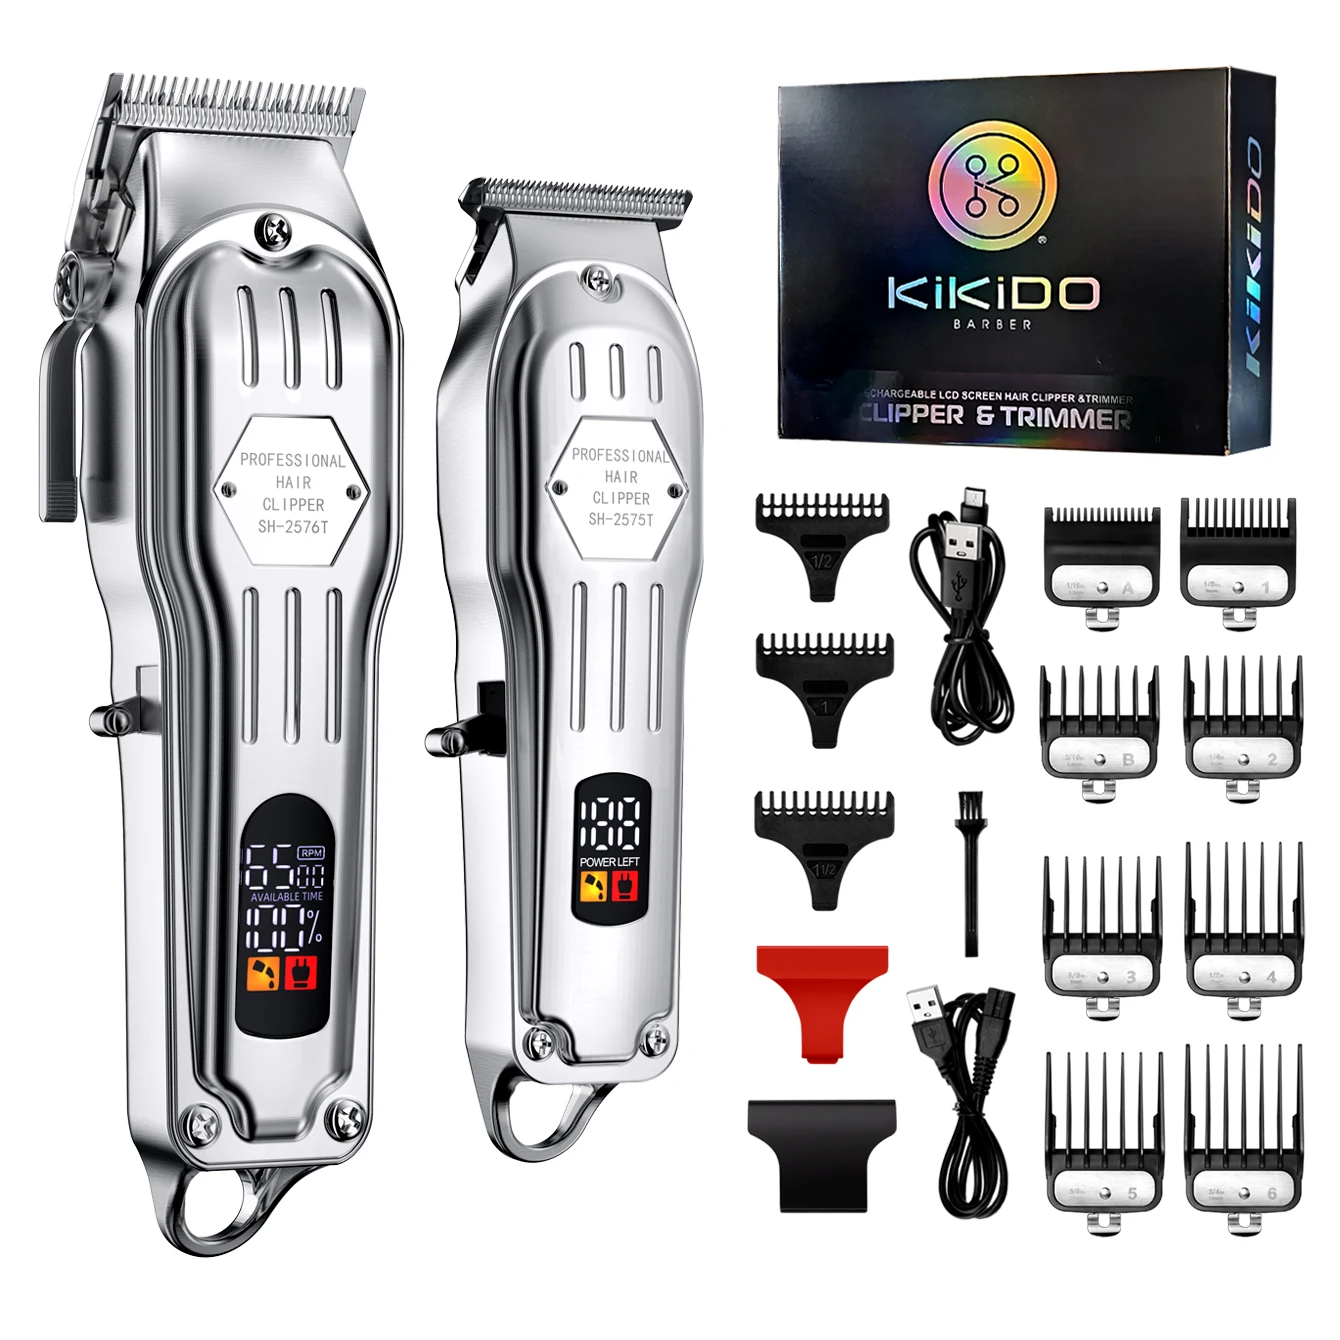 

Машинка для стрижки KIKIDO Мужская аккумуляторная, профессиональный триммер для волос, регулируемый, оригинальный дизайн